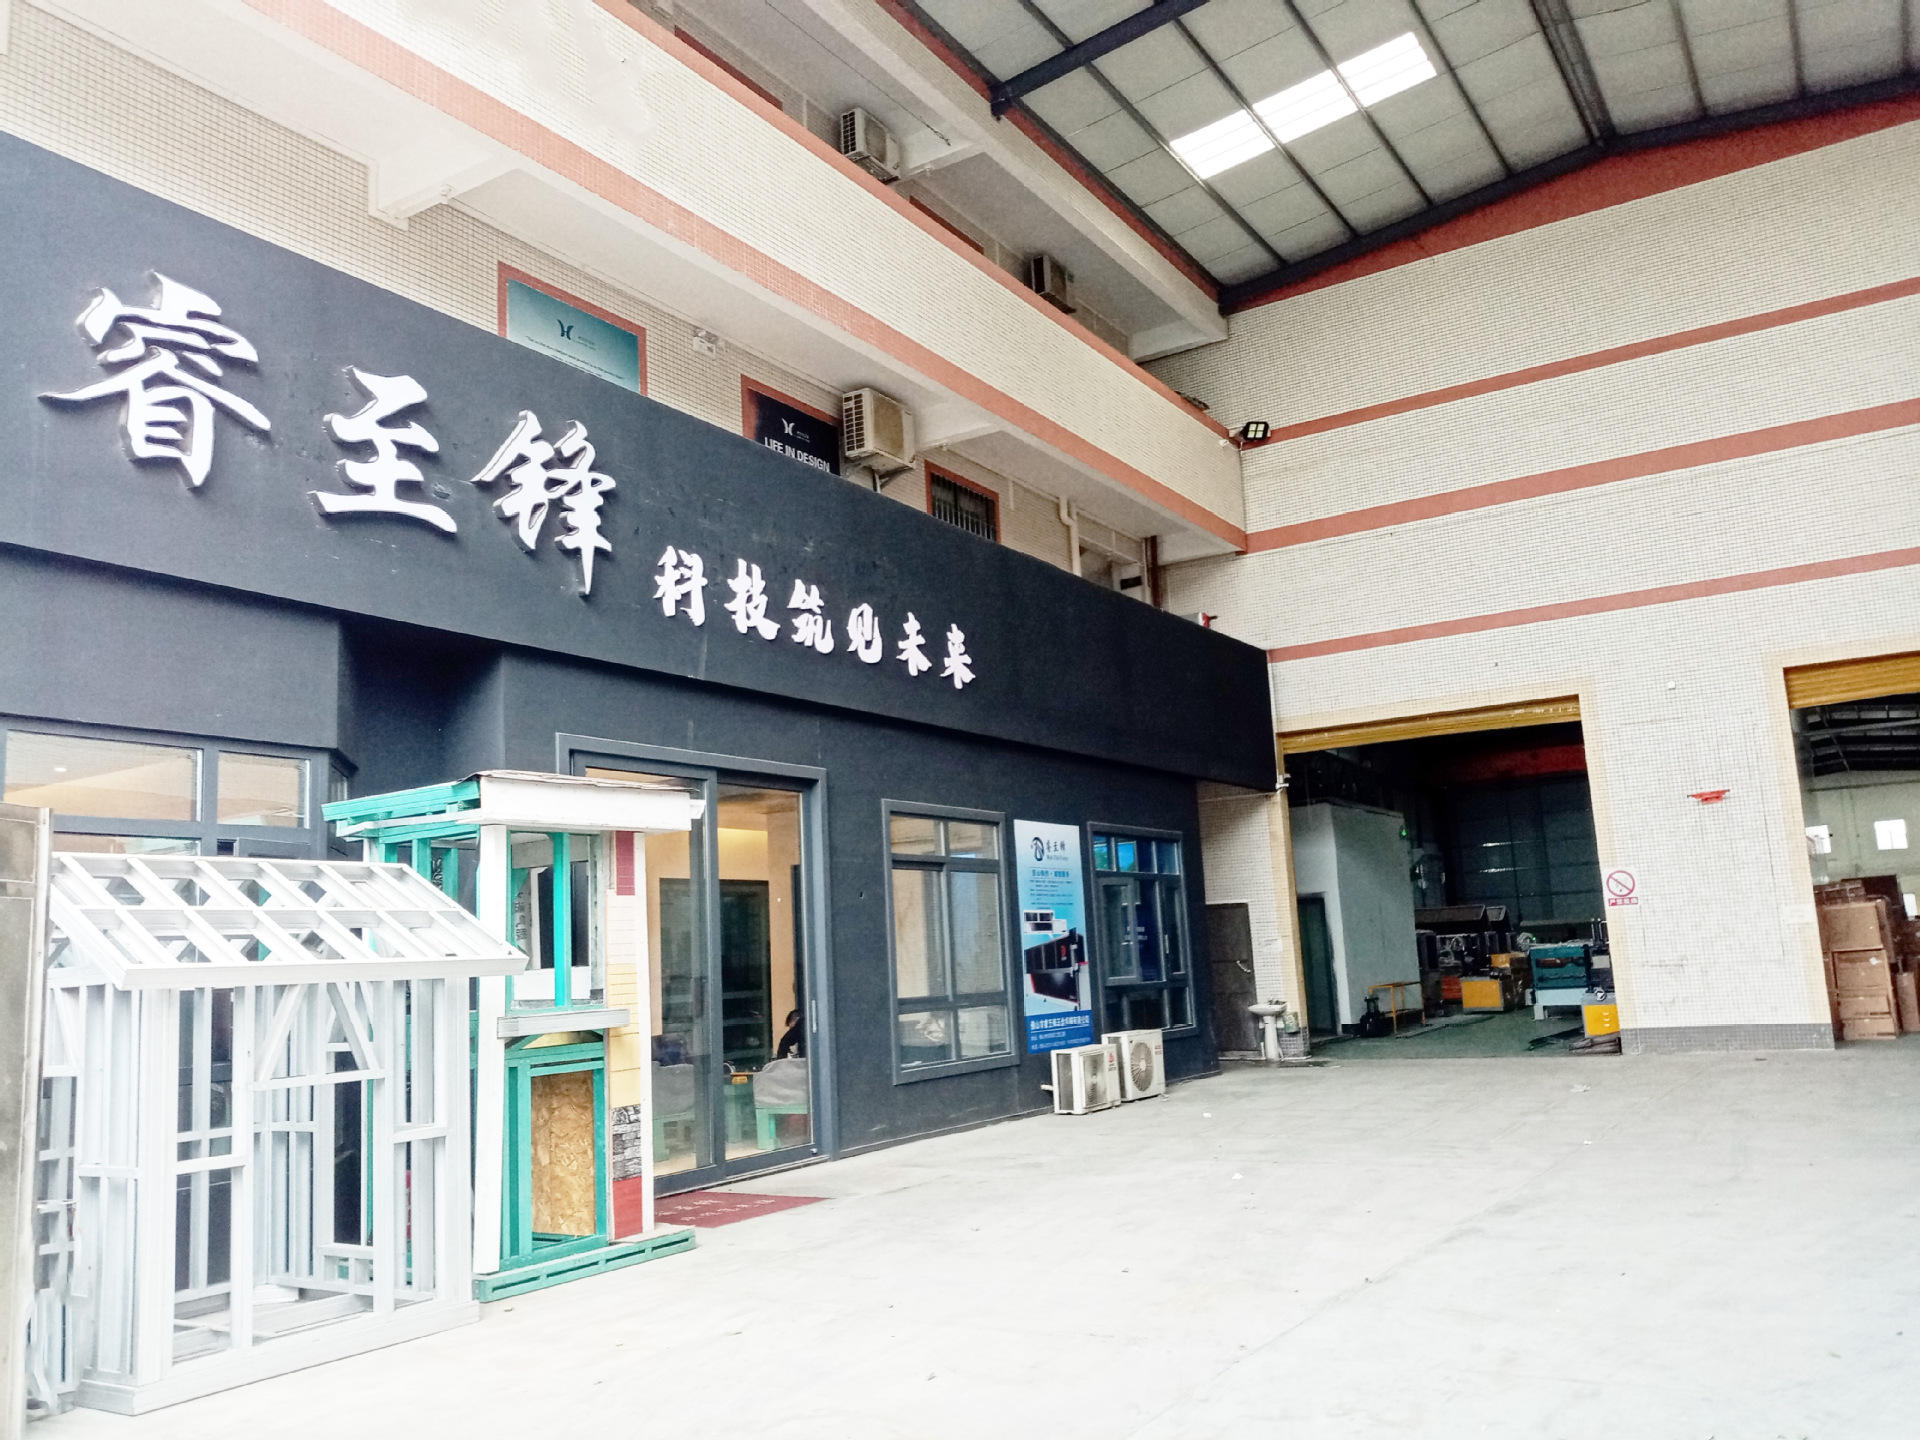   Foshan Ruizhifeng Hardware Machinery Co., Ltd